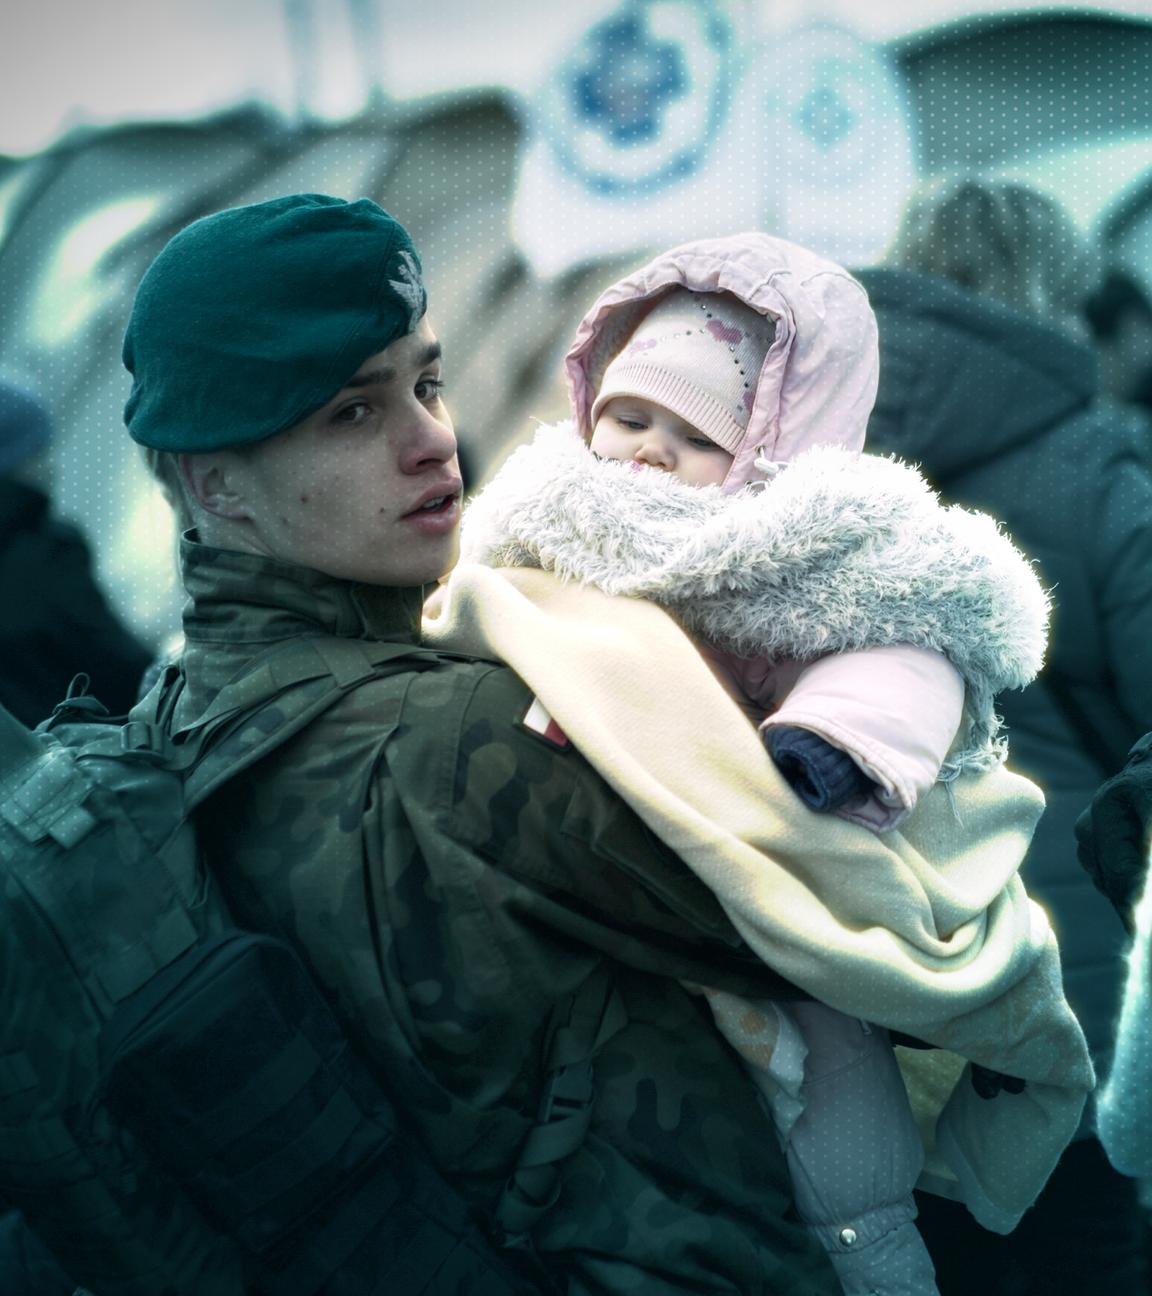 Polnischer Soldat hält ein Baby